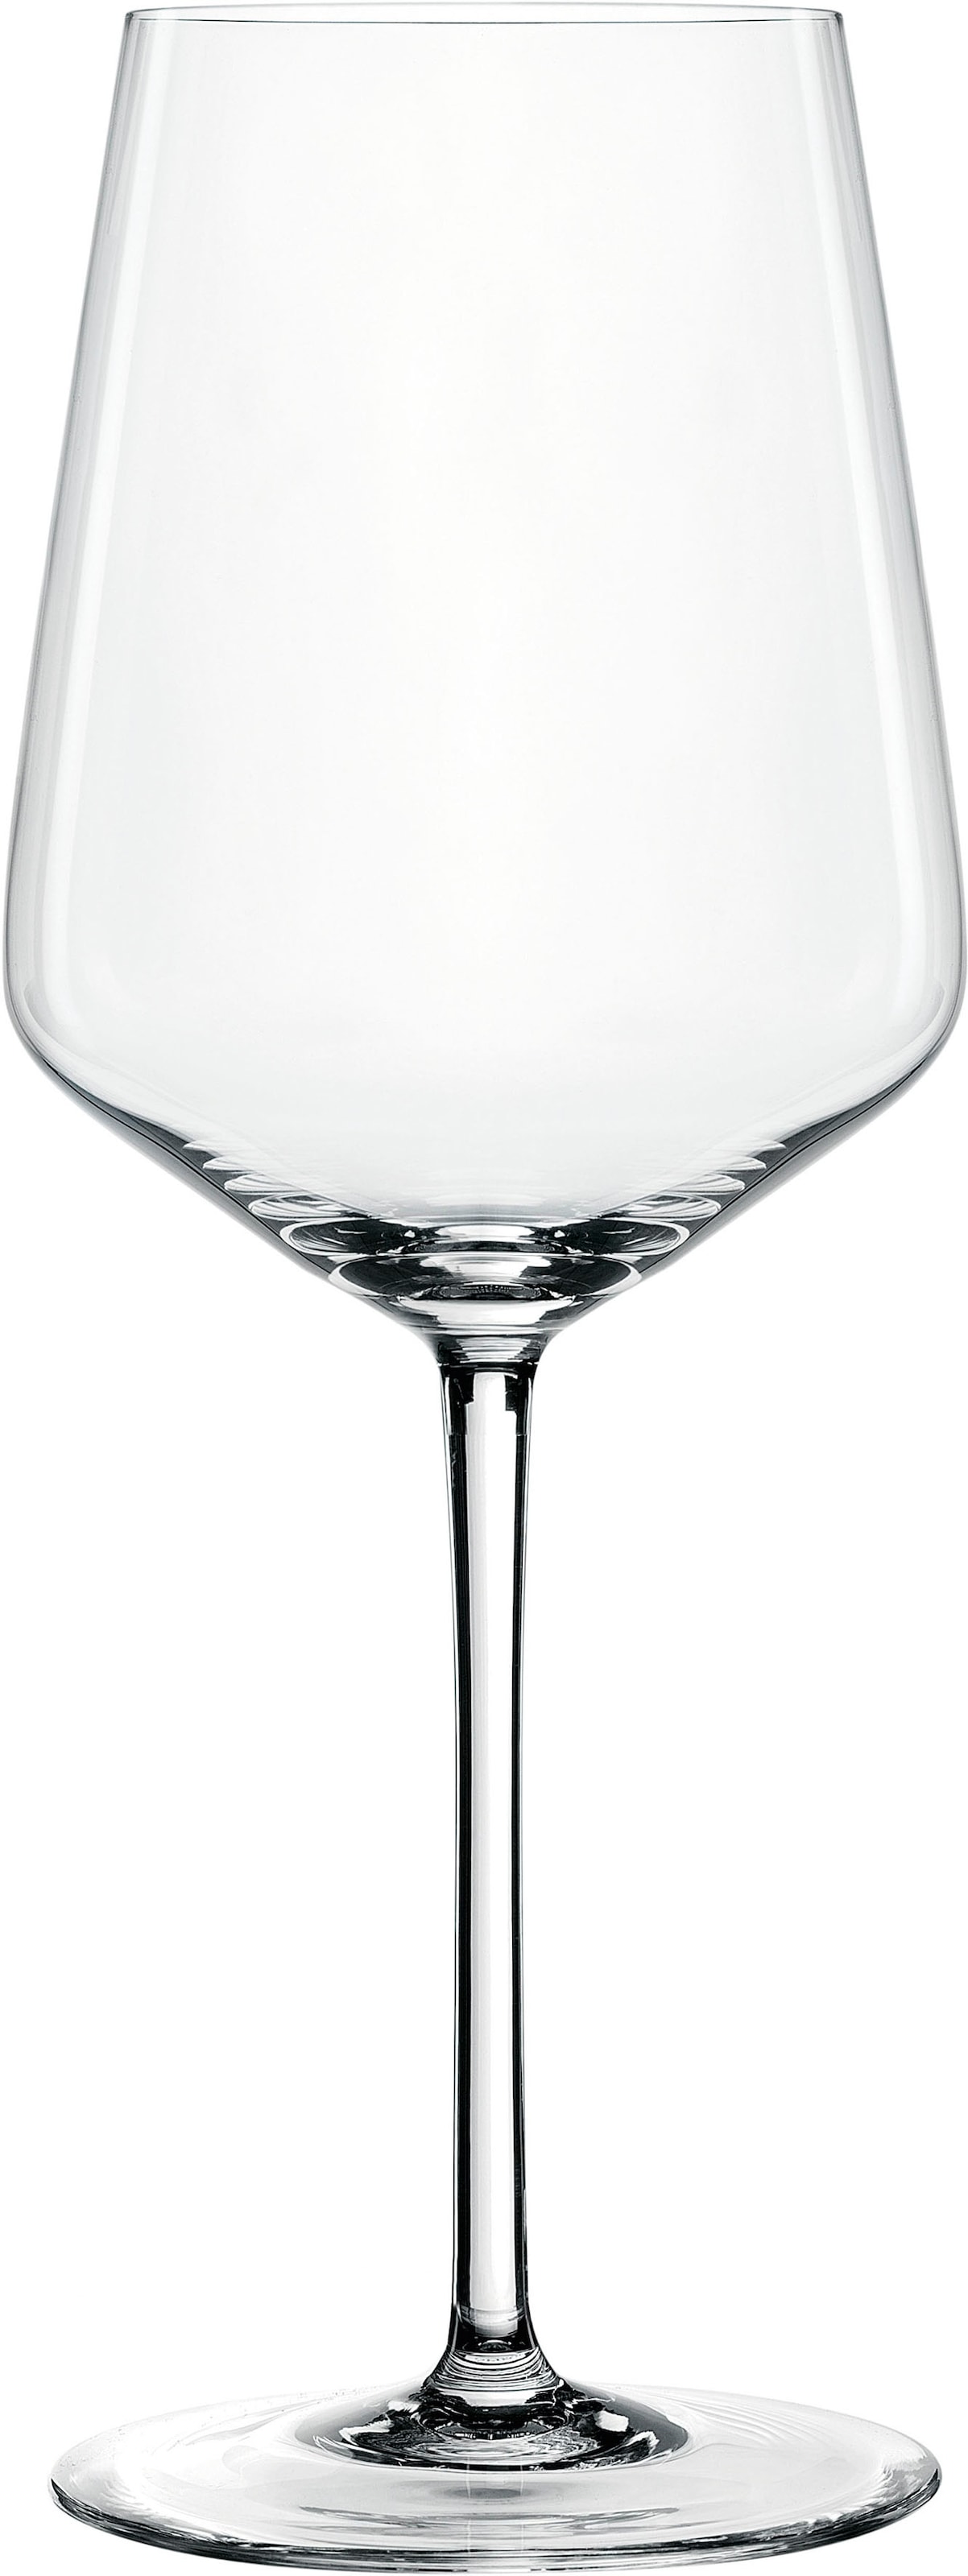 SPIEGELAU Weißweinglas »Style«, (Set, 4 tlg., Set bestehend aus 4 Gläsern), 440 ml, 4-teilig